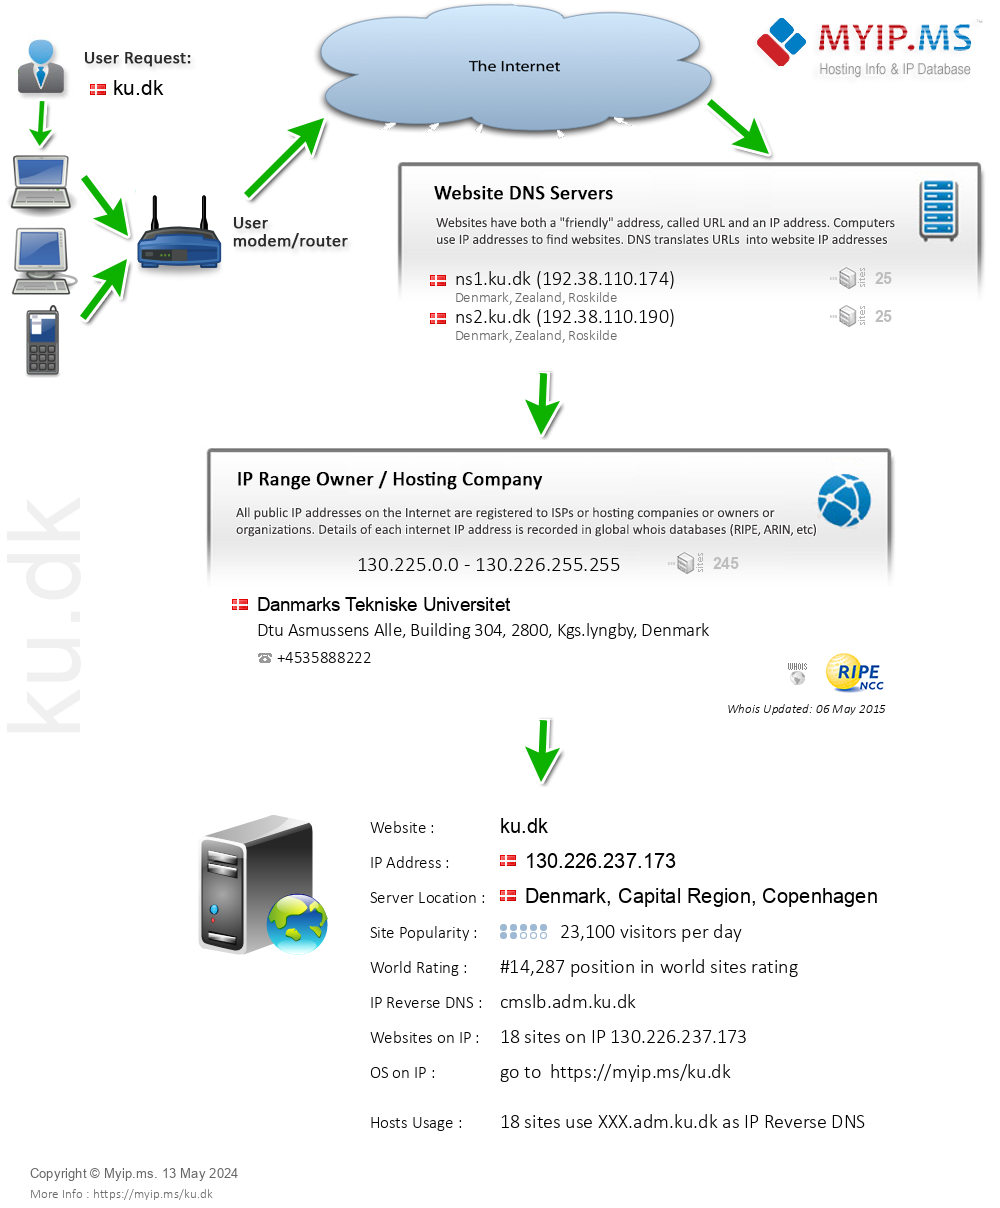 Ku.dk - Website Hosting Visual IP Diagram